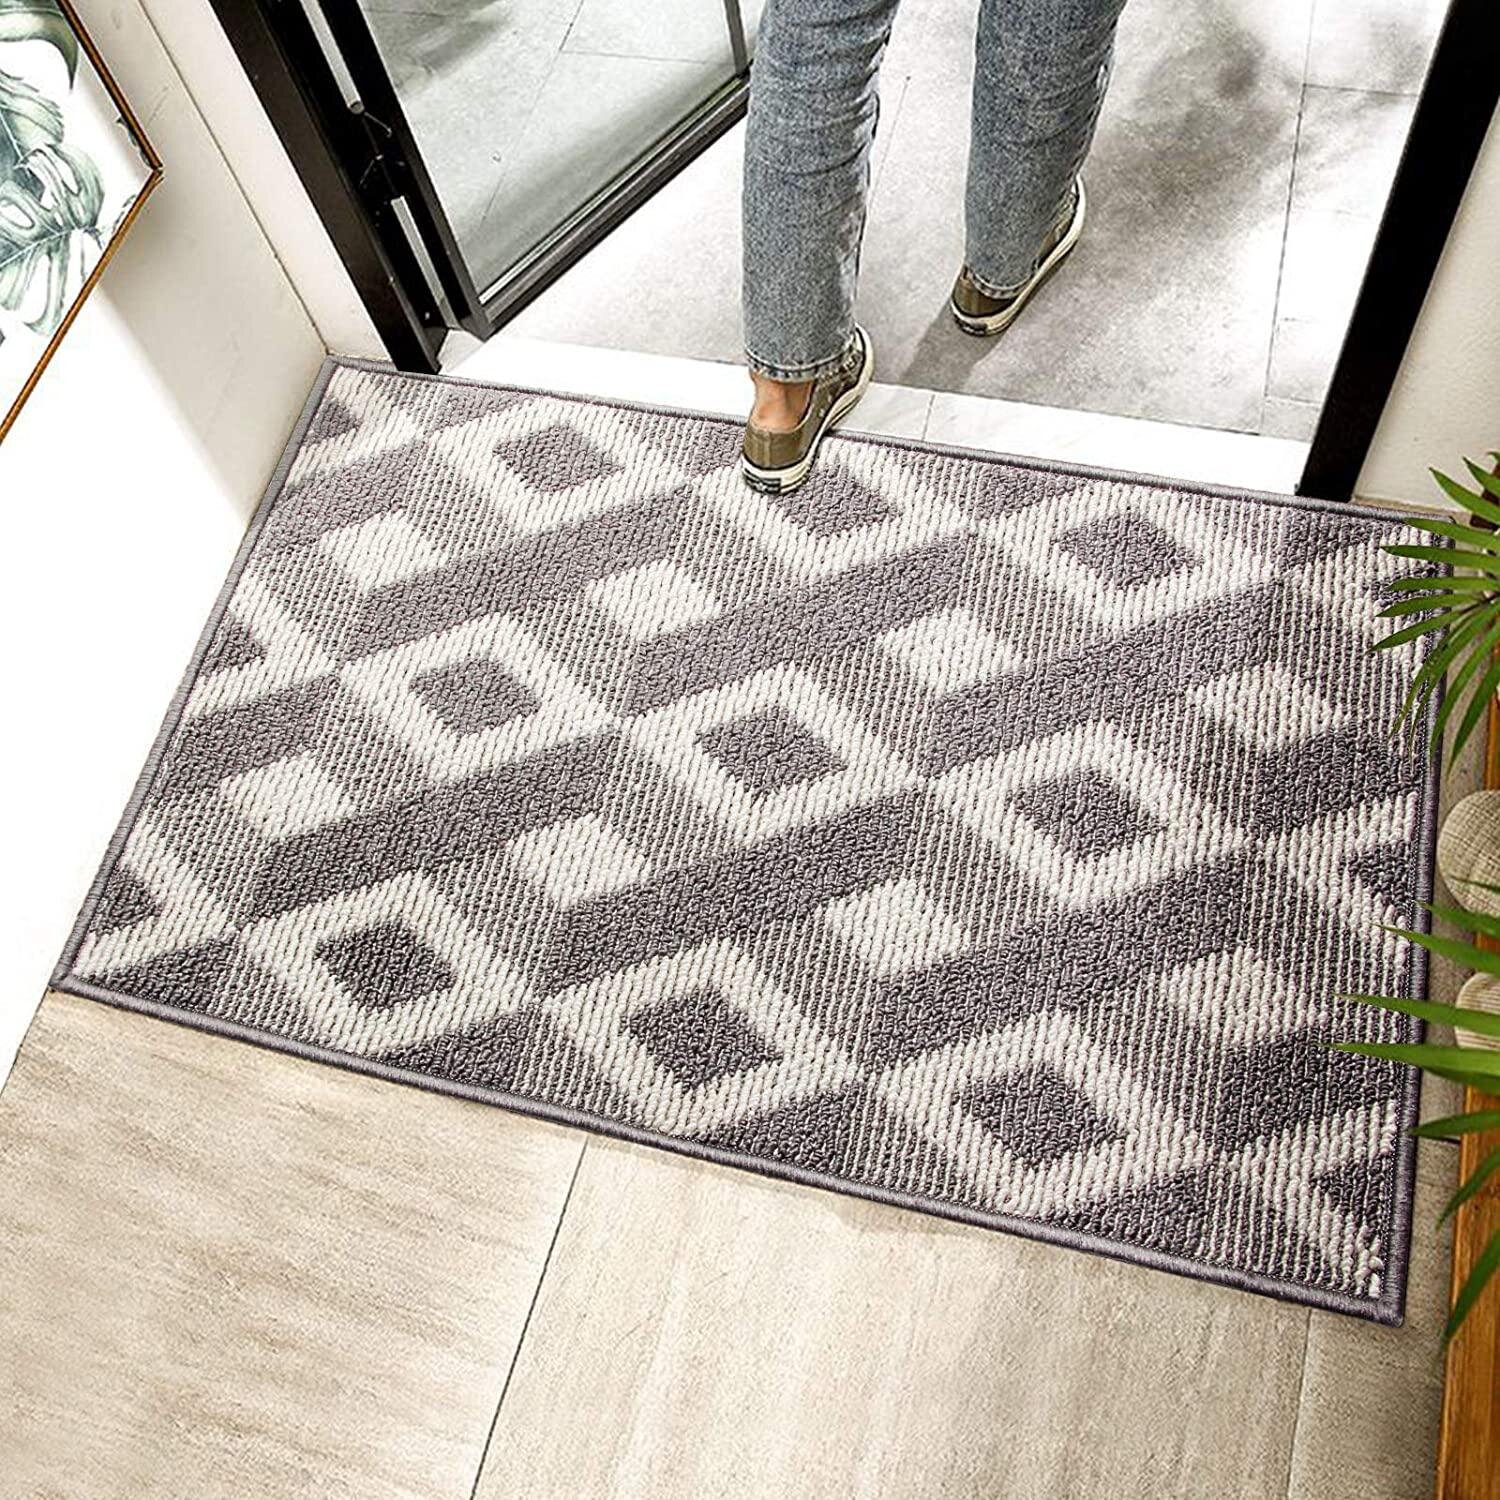 Novelty Doormat Heavy Duty Nonslip Entrance Rug Printed Floor Mat Indoor/Outdoor